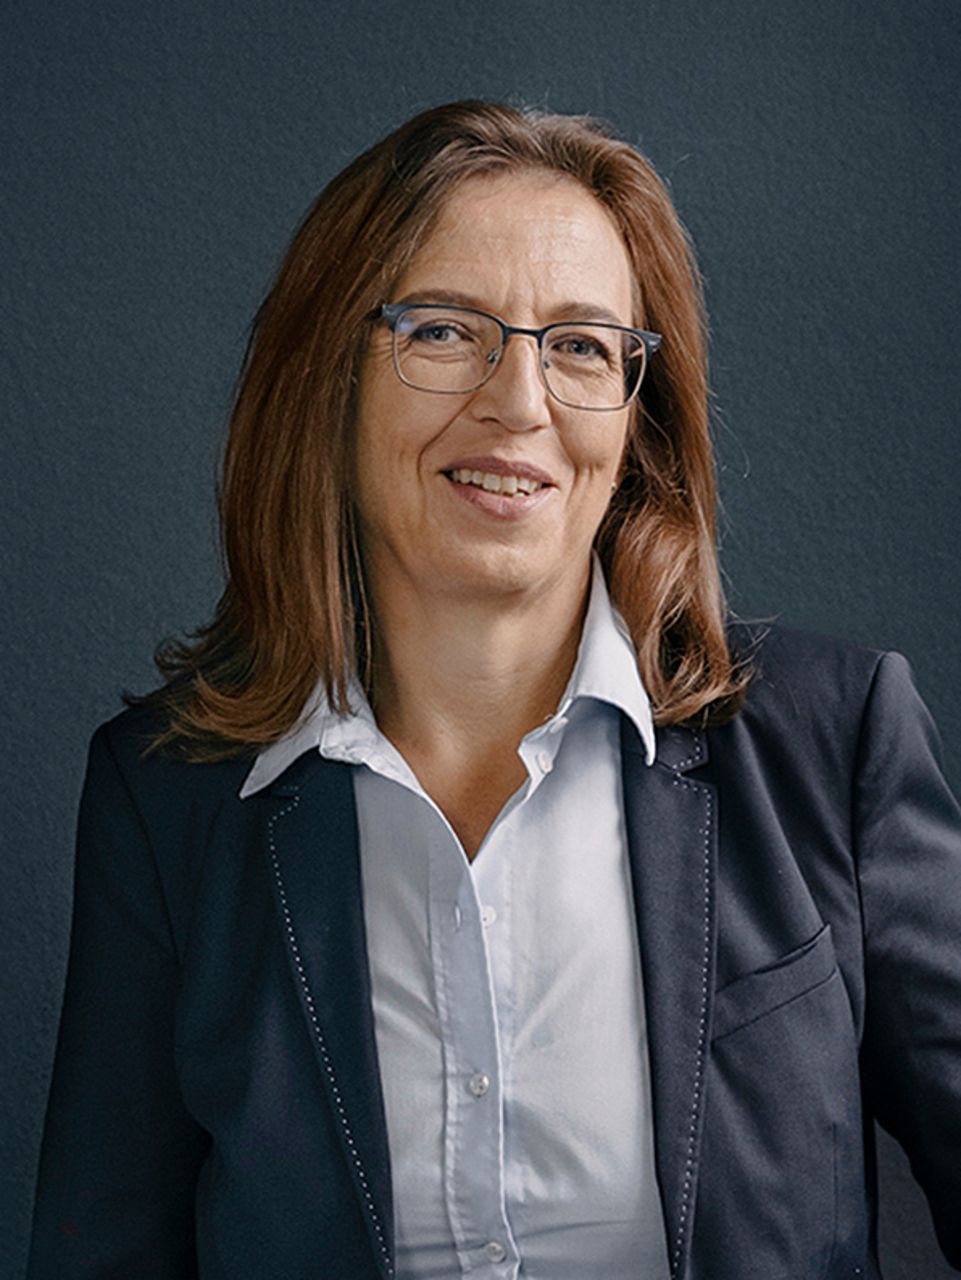  Portrait von Annette Danielski, neue Finanzvorständin bei der TRATON SE in Farbe. 